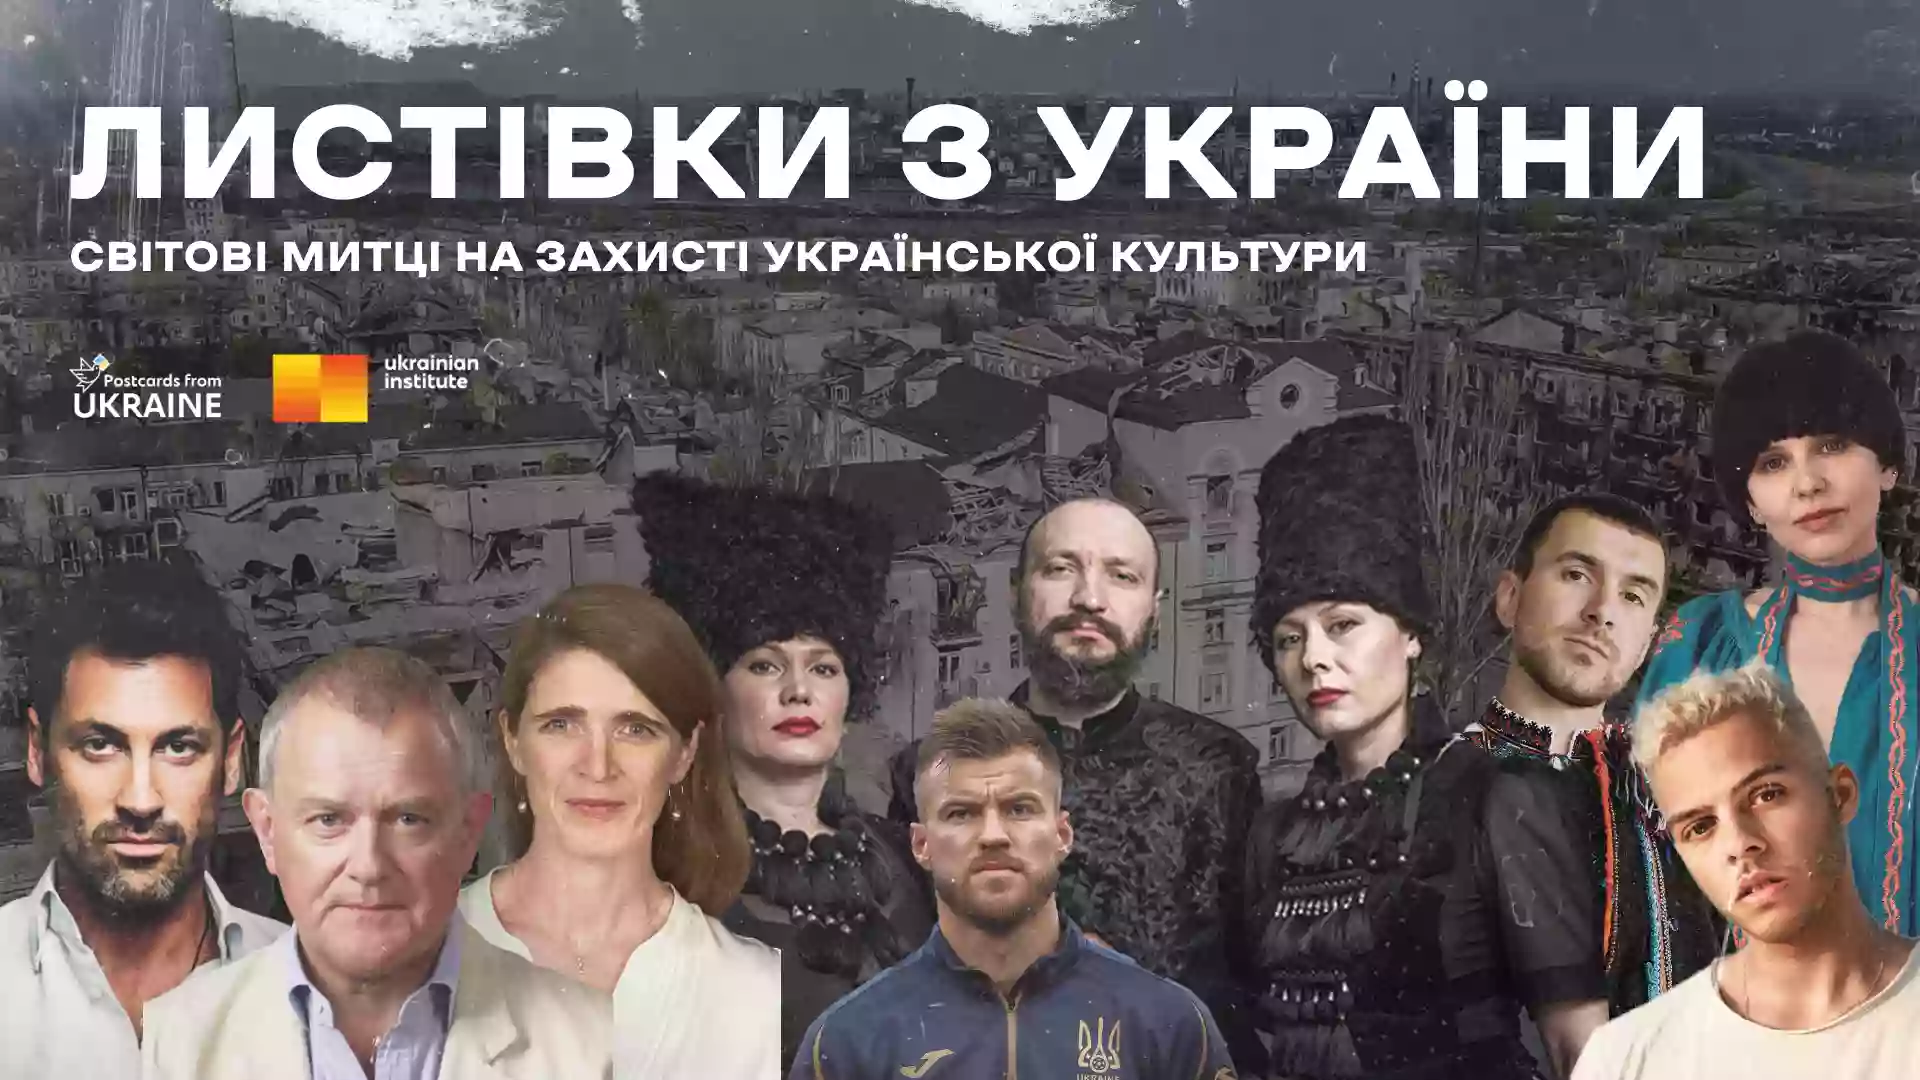 Понад 13 мільйонів іноземців дізналися про знищені культурні пам'ятки через кампанію «Листівки з України»